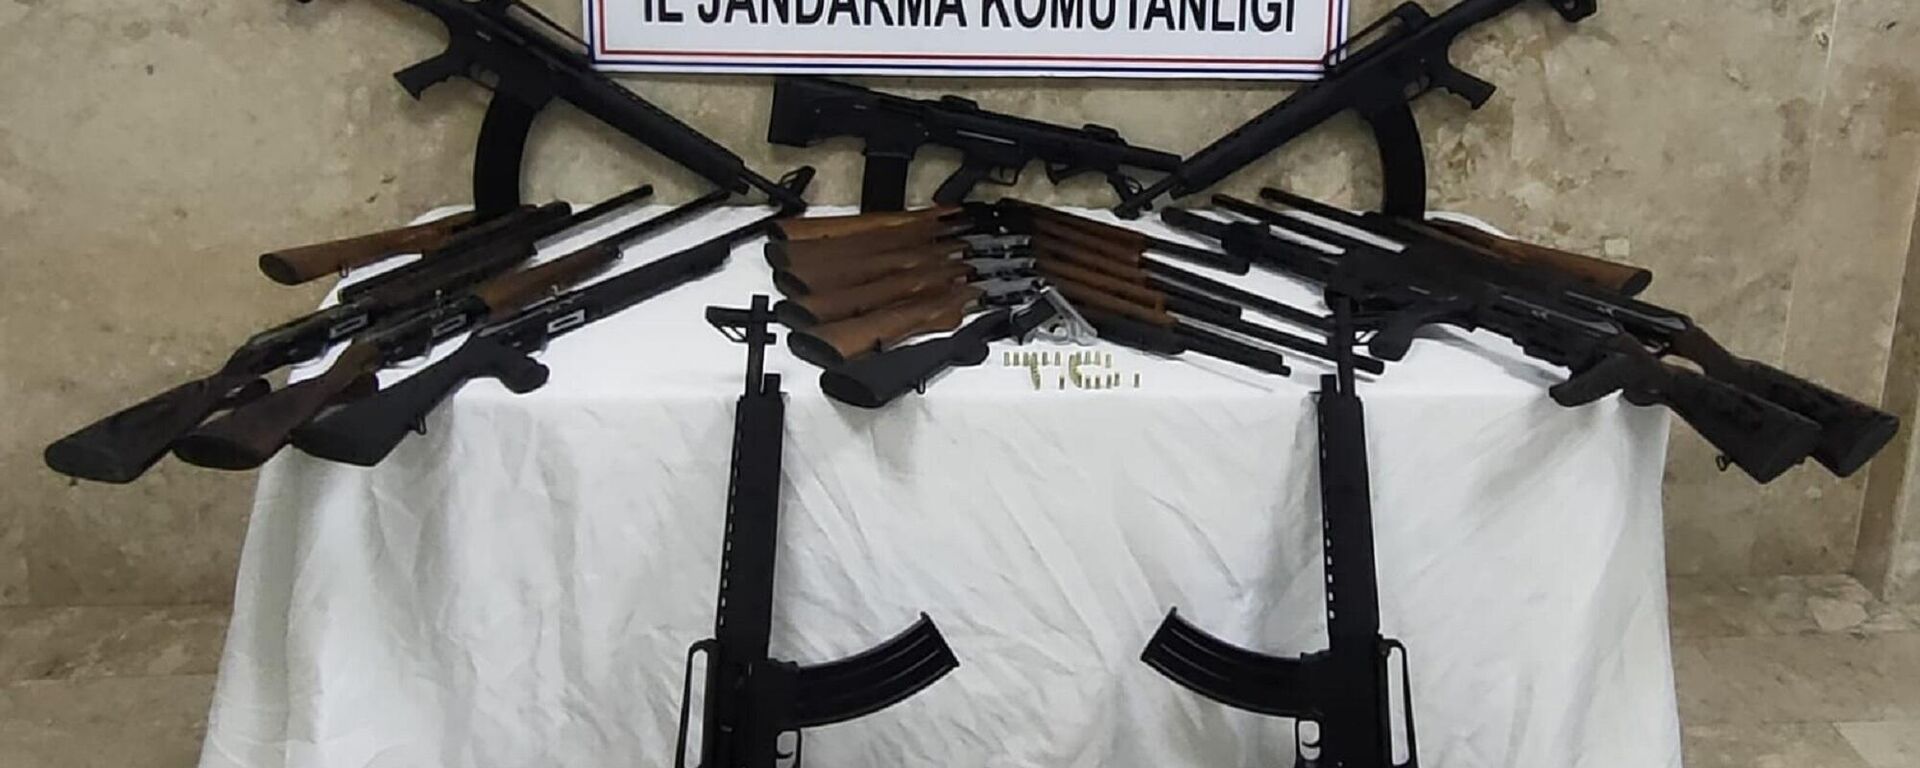 Konya'nın Beyşehir ilçesinde bir silah imalathanesinde usulsüz üretildiği iddia edilen 19 av tüfeğine el konuldu. - Sputnik Türkiye, 1920, 03.01.2022